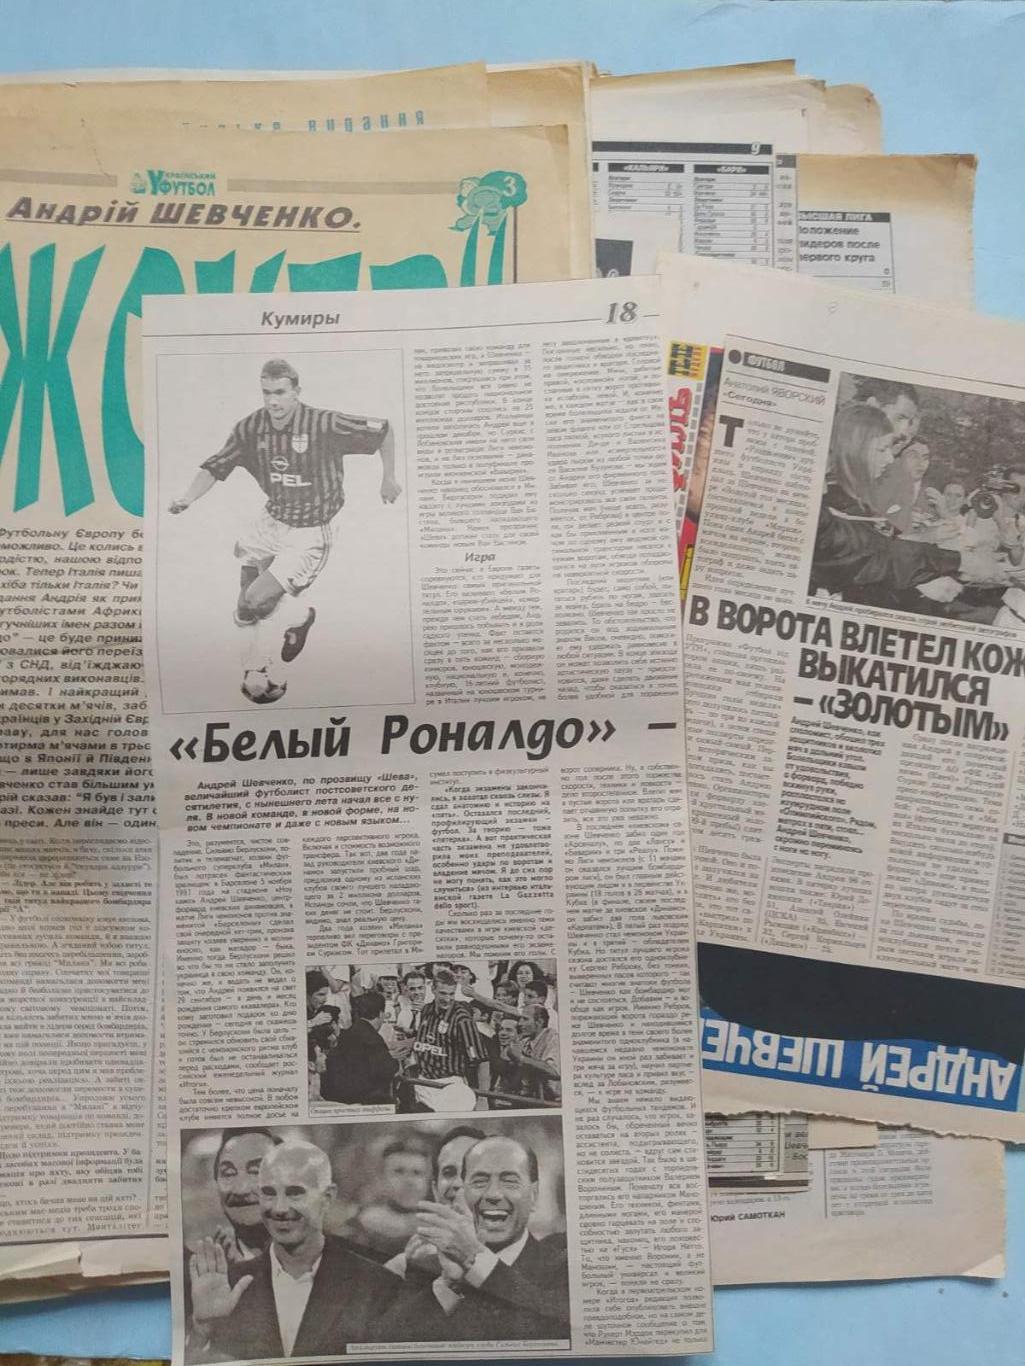 Футболист Андрей Шевченко около сотни статей и фото из разных газет и журналов 3